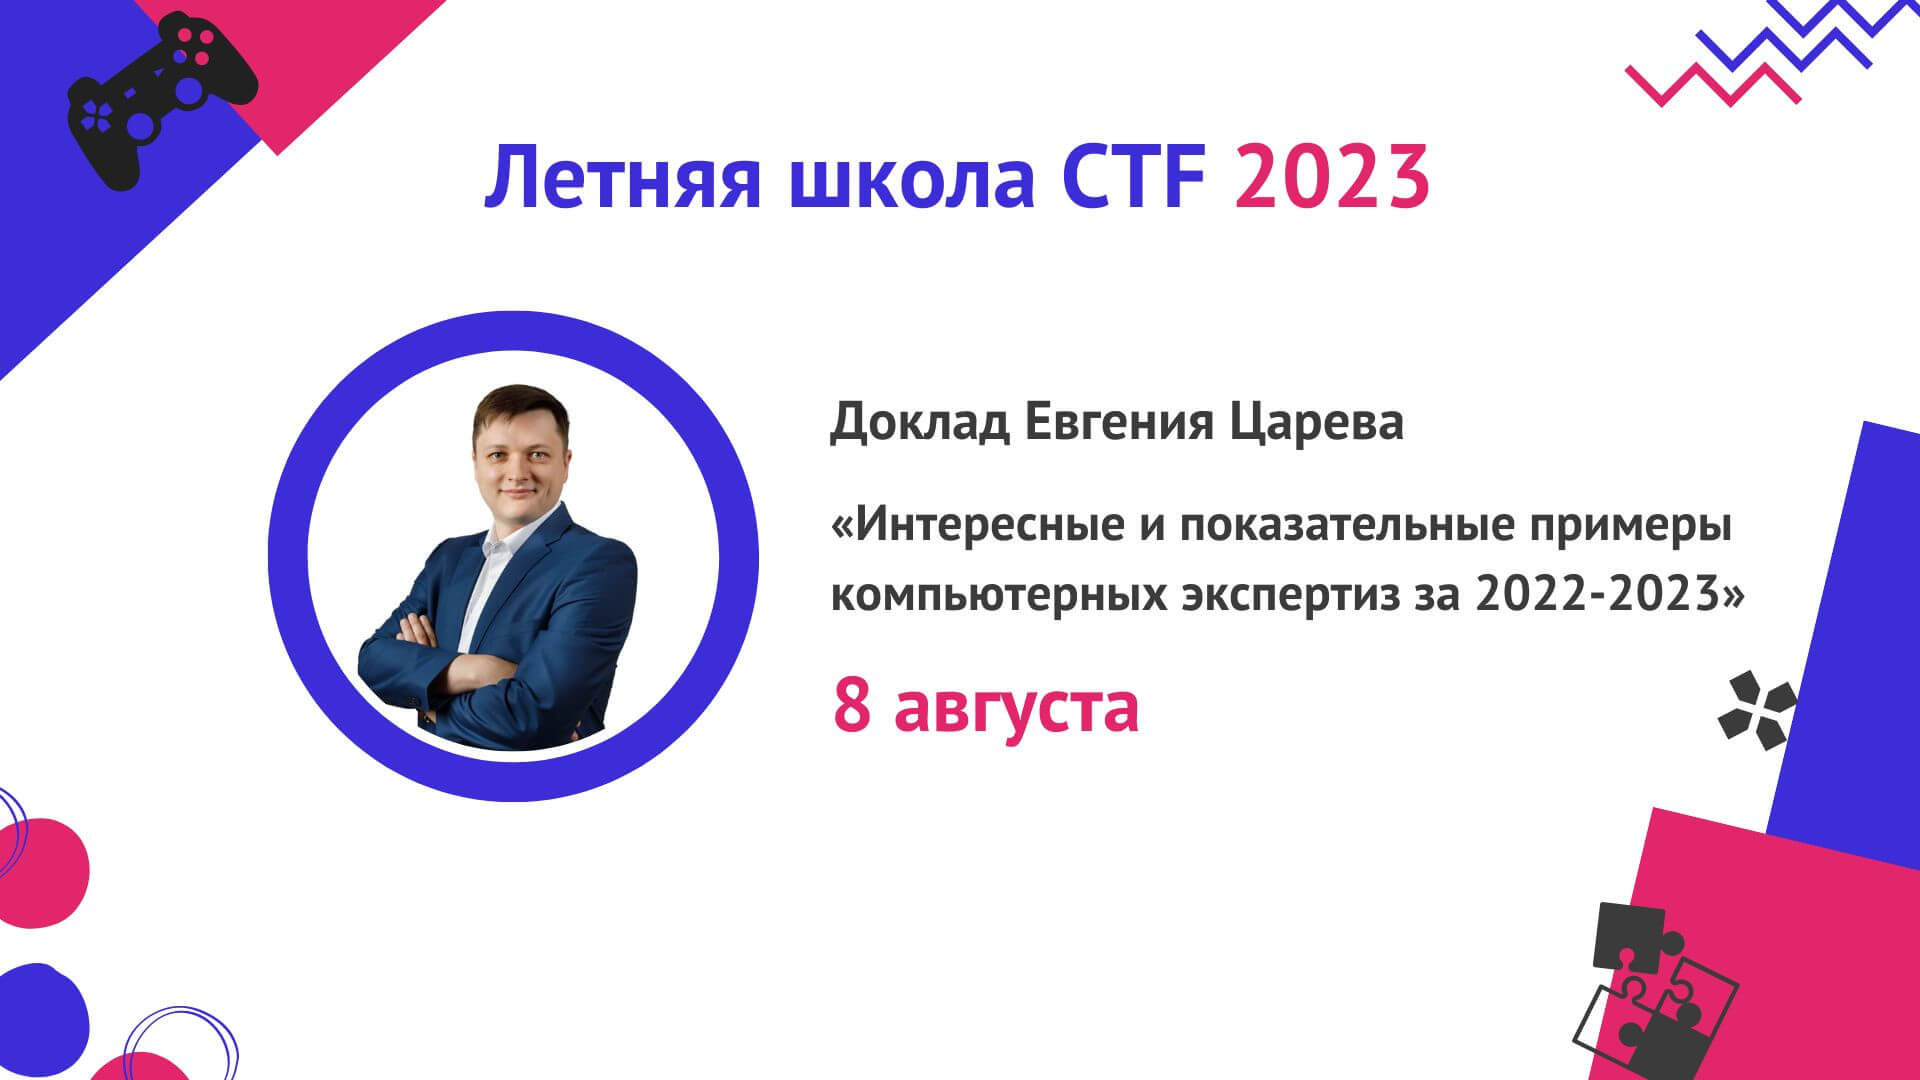 Евгений Царев представит доклад на Летней школе CTF